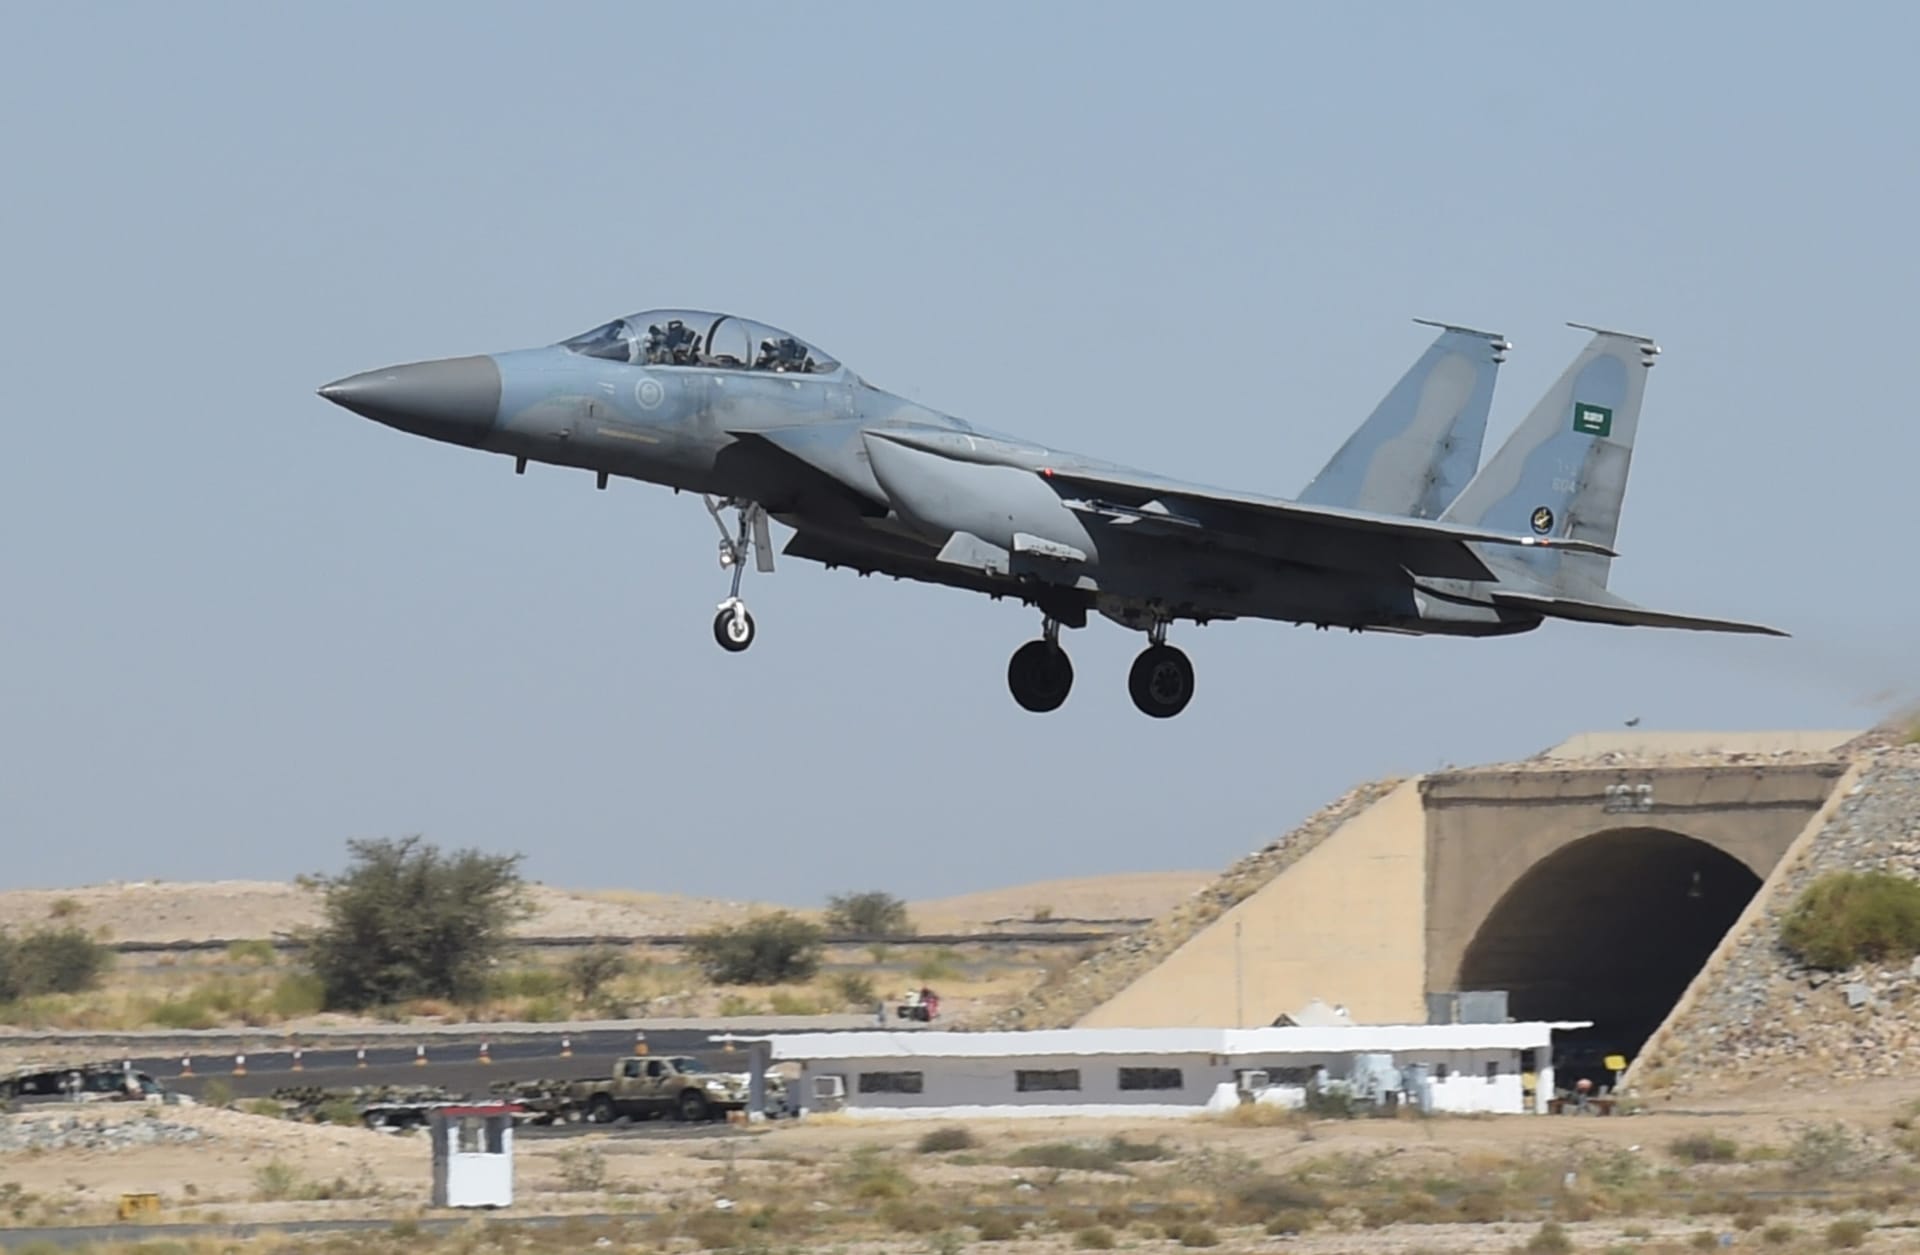 السعودية تُعلن سقوط طائرة مقاتلة في المنطقة الشرقية وتكشف مصير طاقمها وتفاصيل "الحادث"